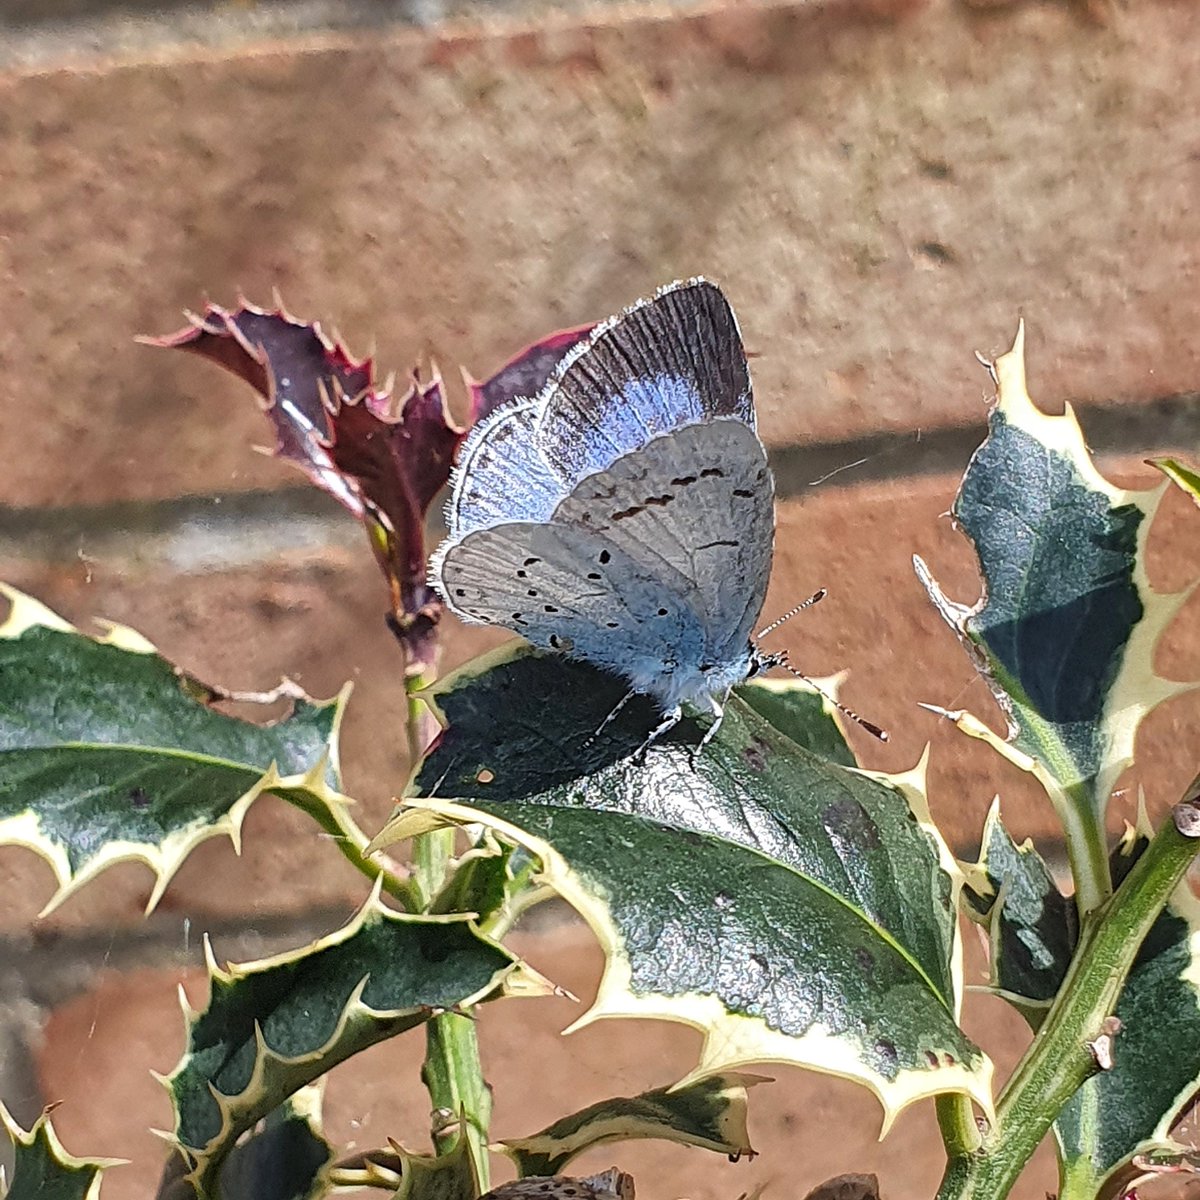 More visits yesterday 💙 #inmygarden #lowestoft @savebutterflies @BC_Suffolk